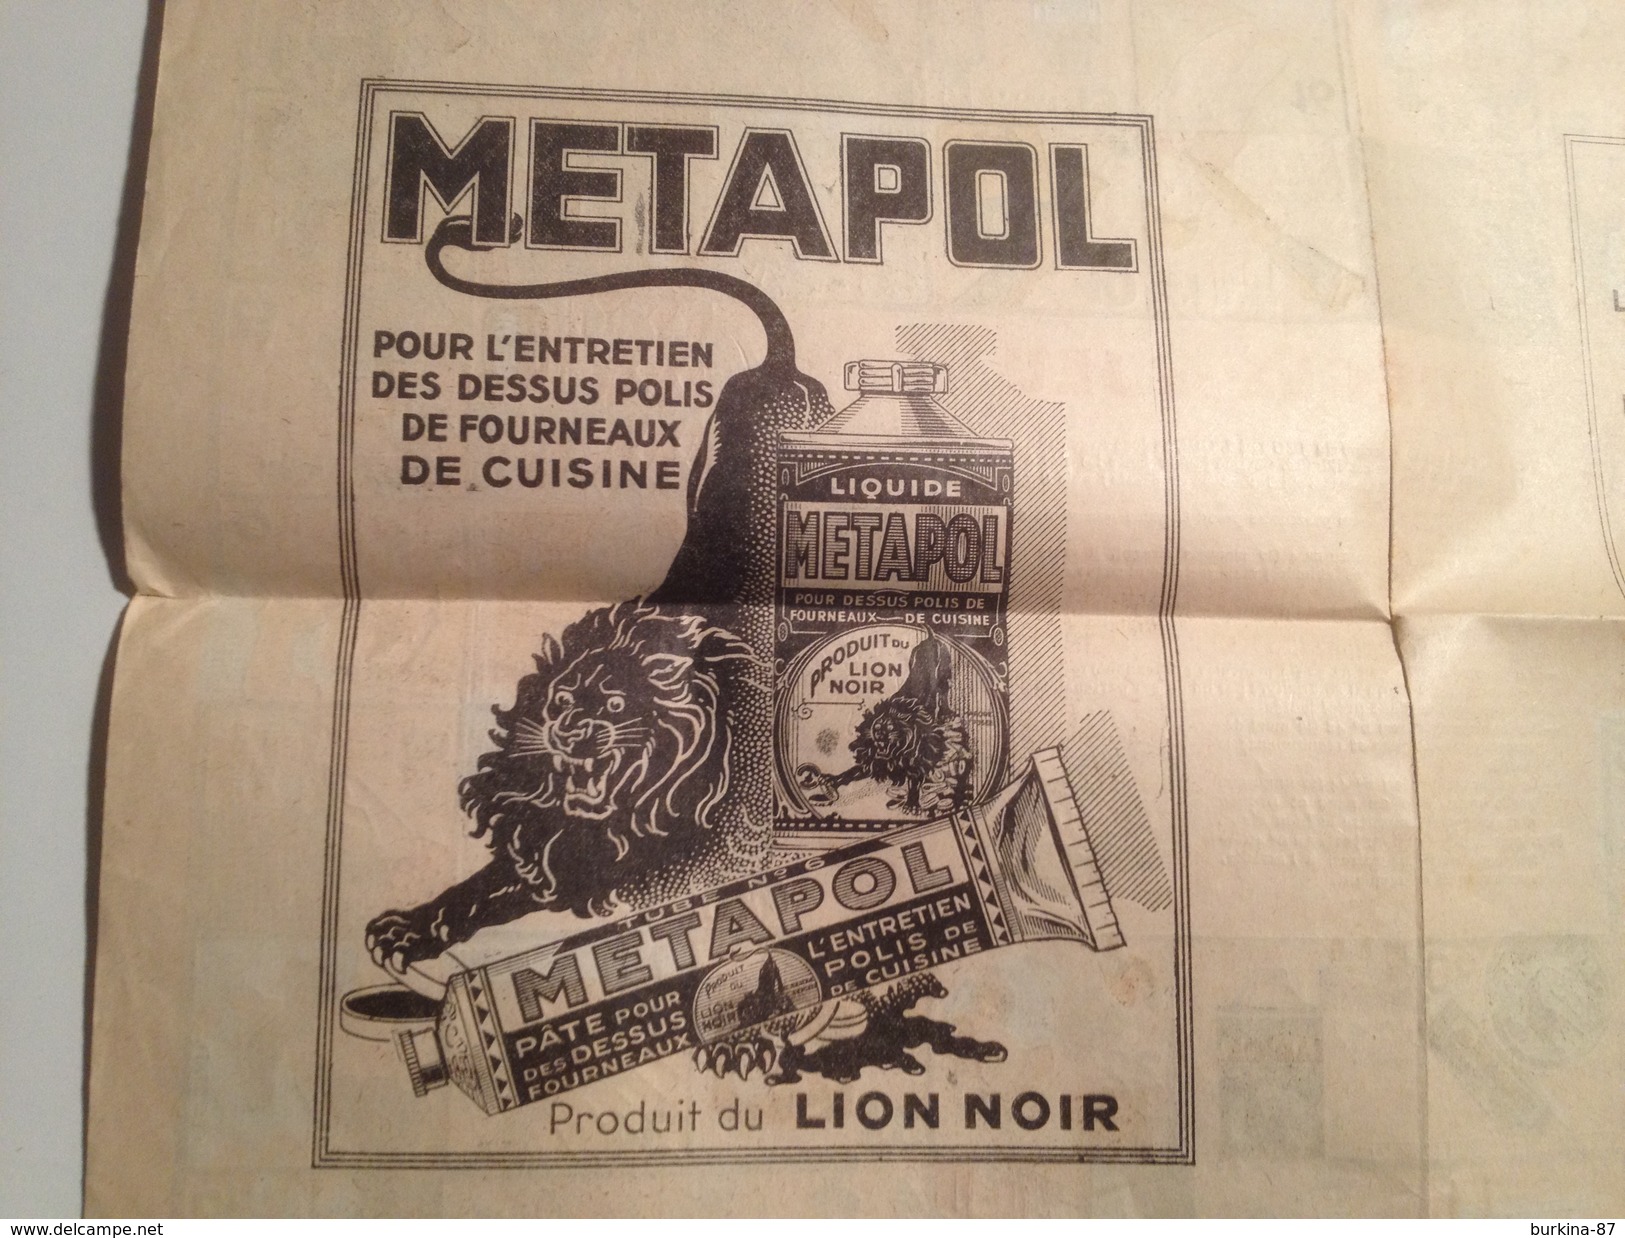 Frottinette et Frottinet, Presentent le jeu de L'OIE, LION NOIR, les pub METAPOL et produits lion NOIR